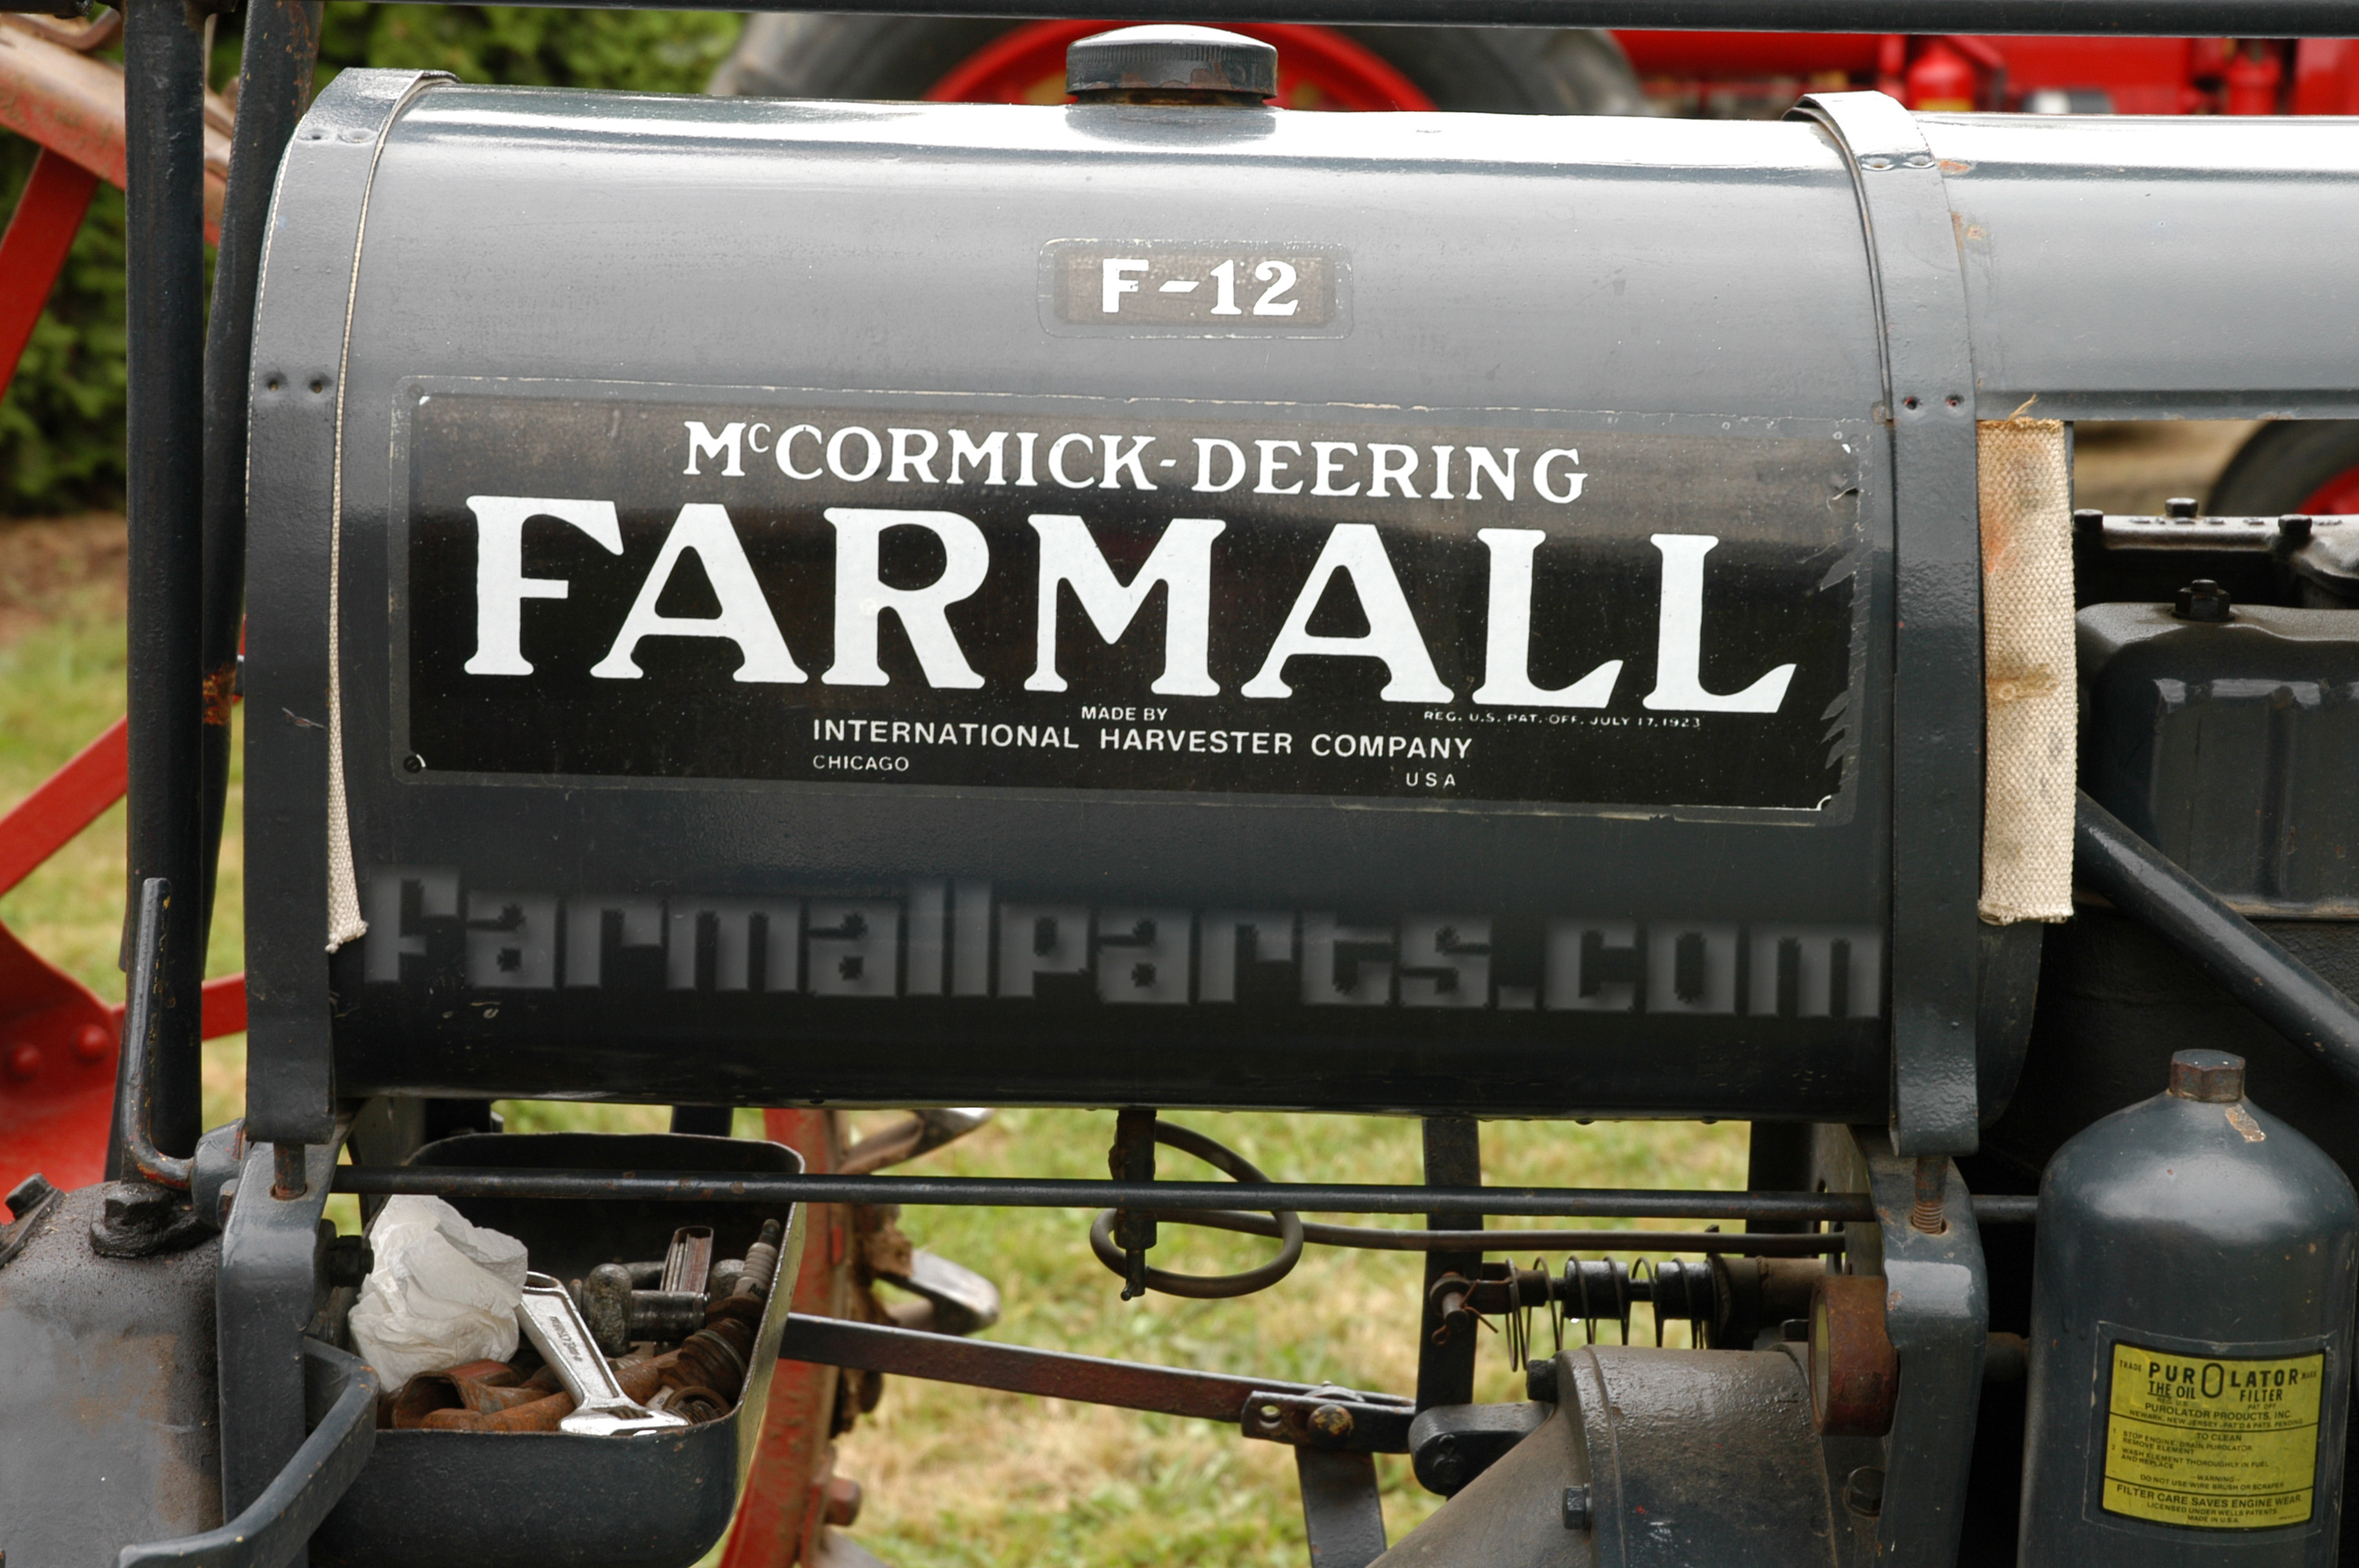 International Harvester Farmall Farmall F-12 Tank